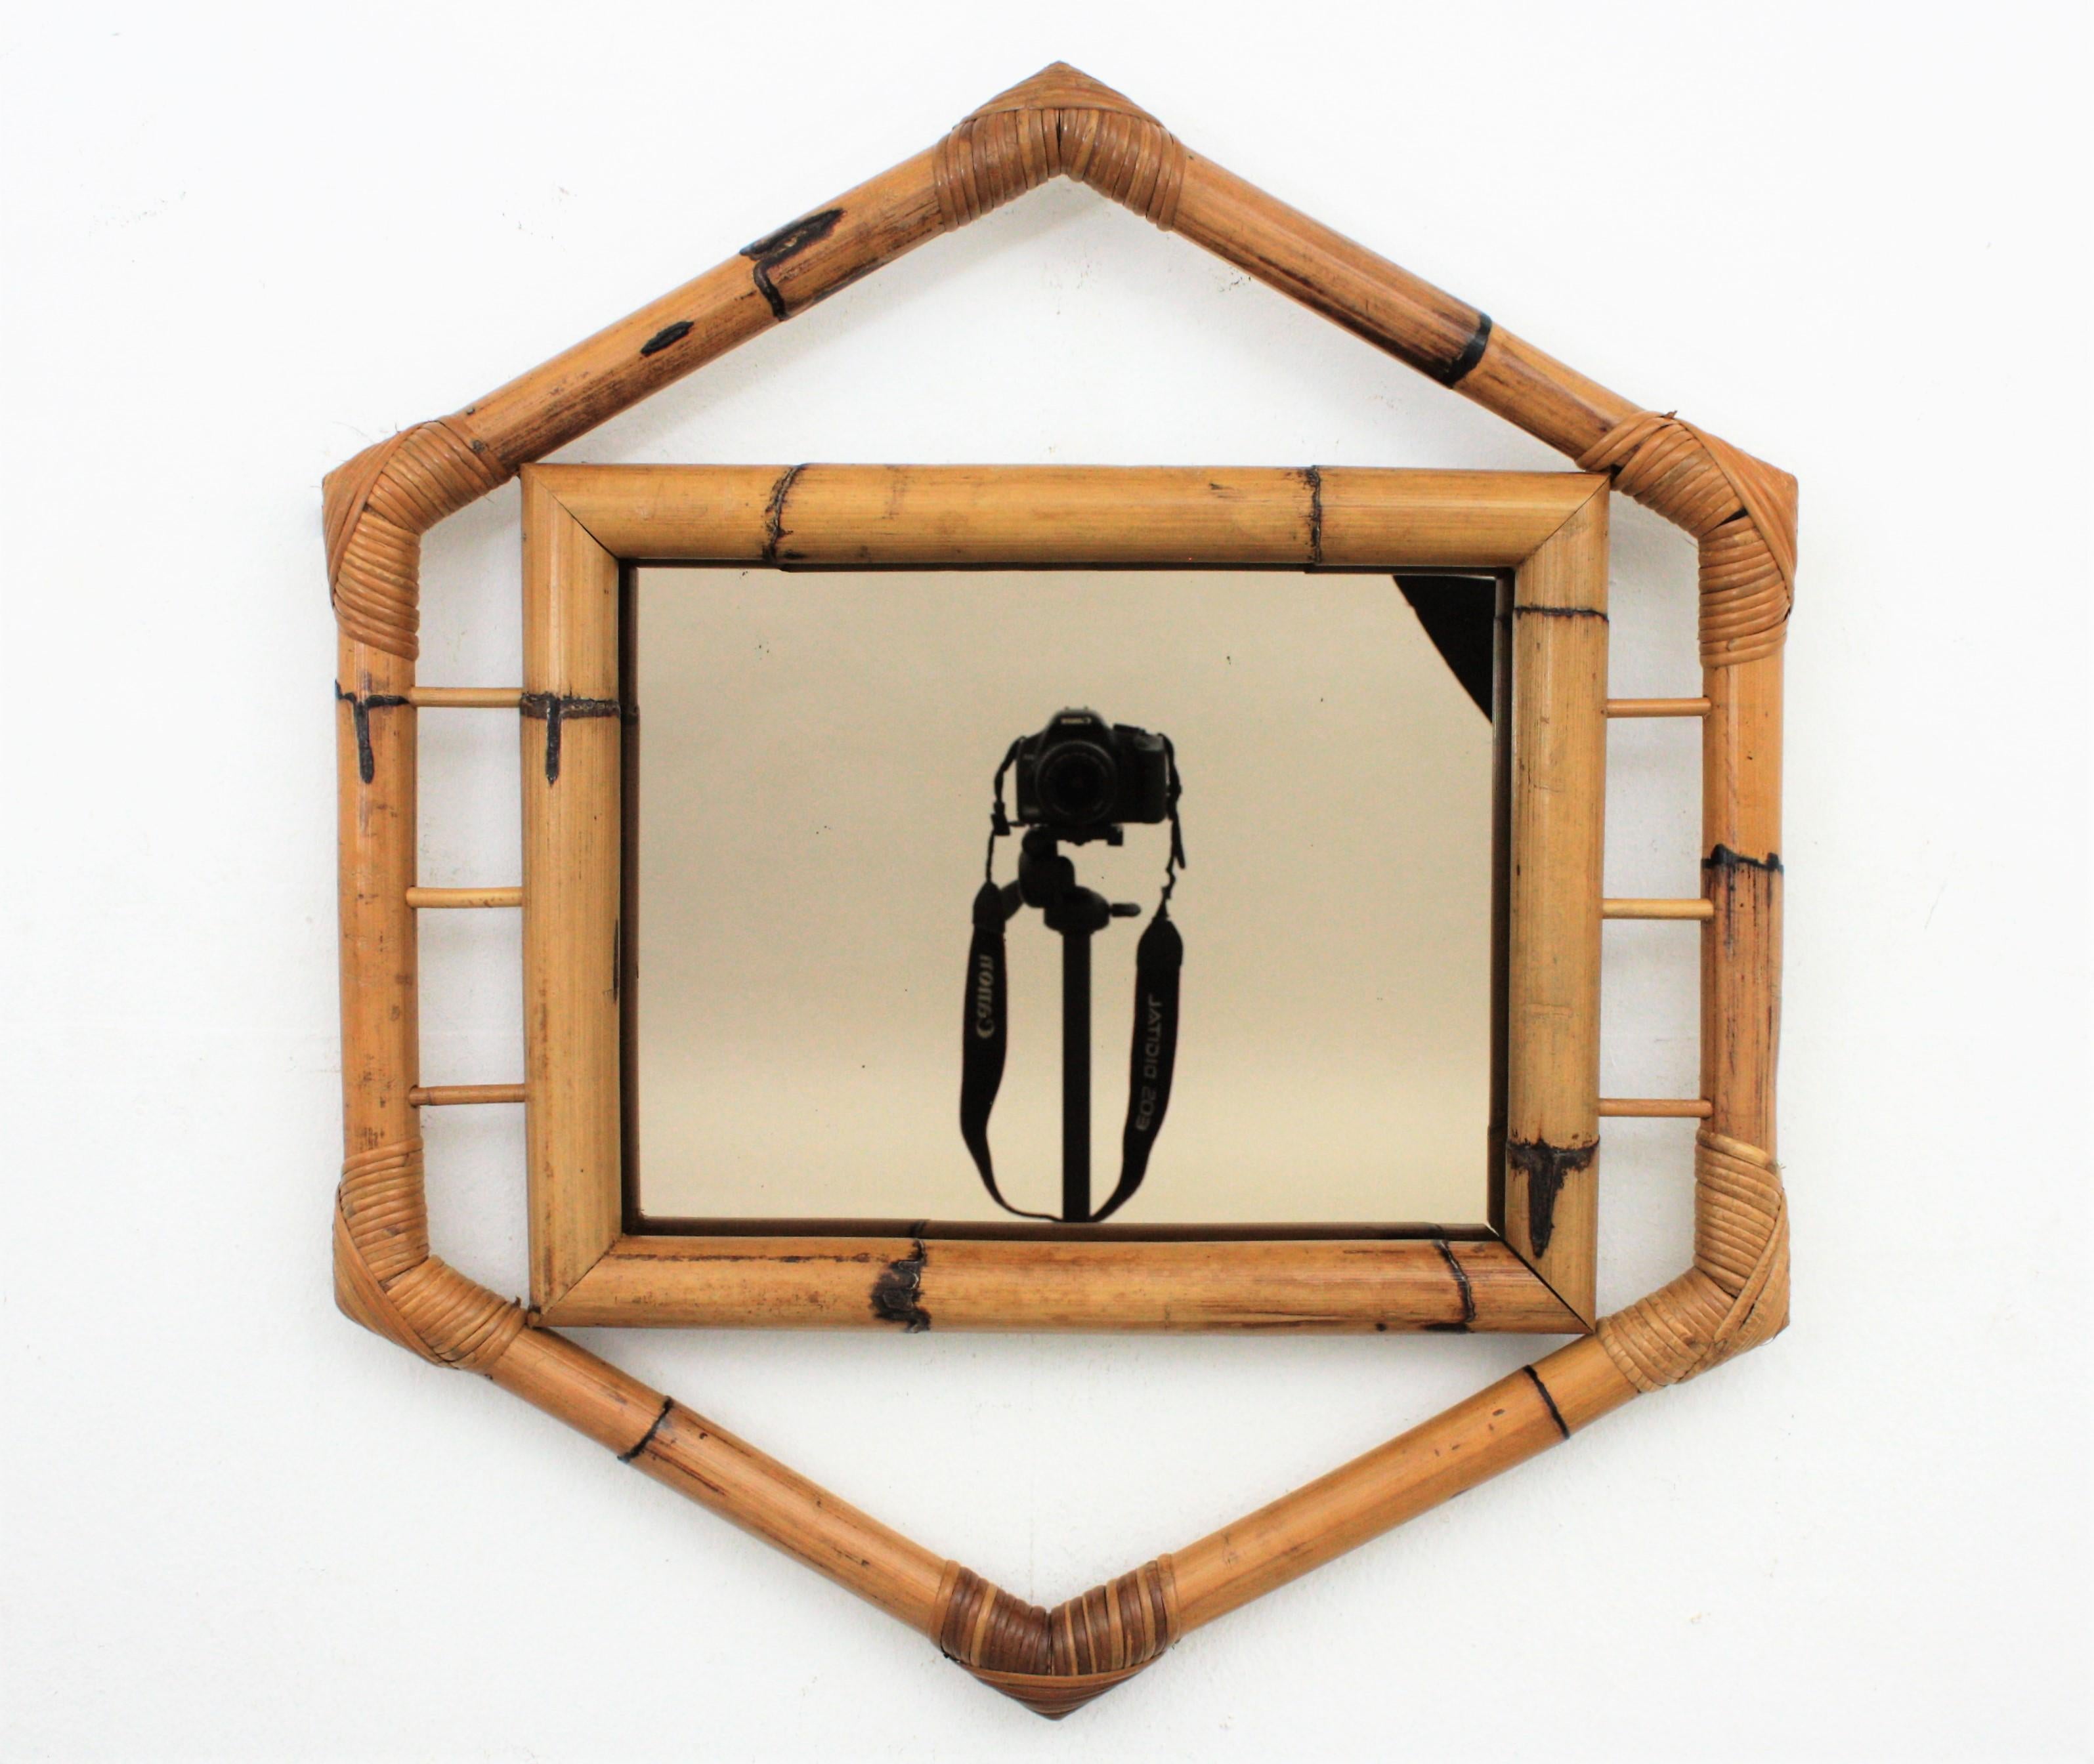 Magnifique miroir en bambou de forme hexagonale avec des accents coloniaux et orientaux Tiki et miroir fumé, France, 1950-1960.
Fabriqué à la main avec d'épaisses cannes de bambou, il présente quelques détails en rotin et les coins ont des accents